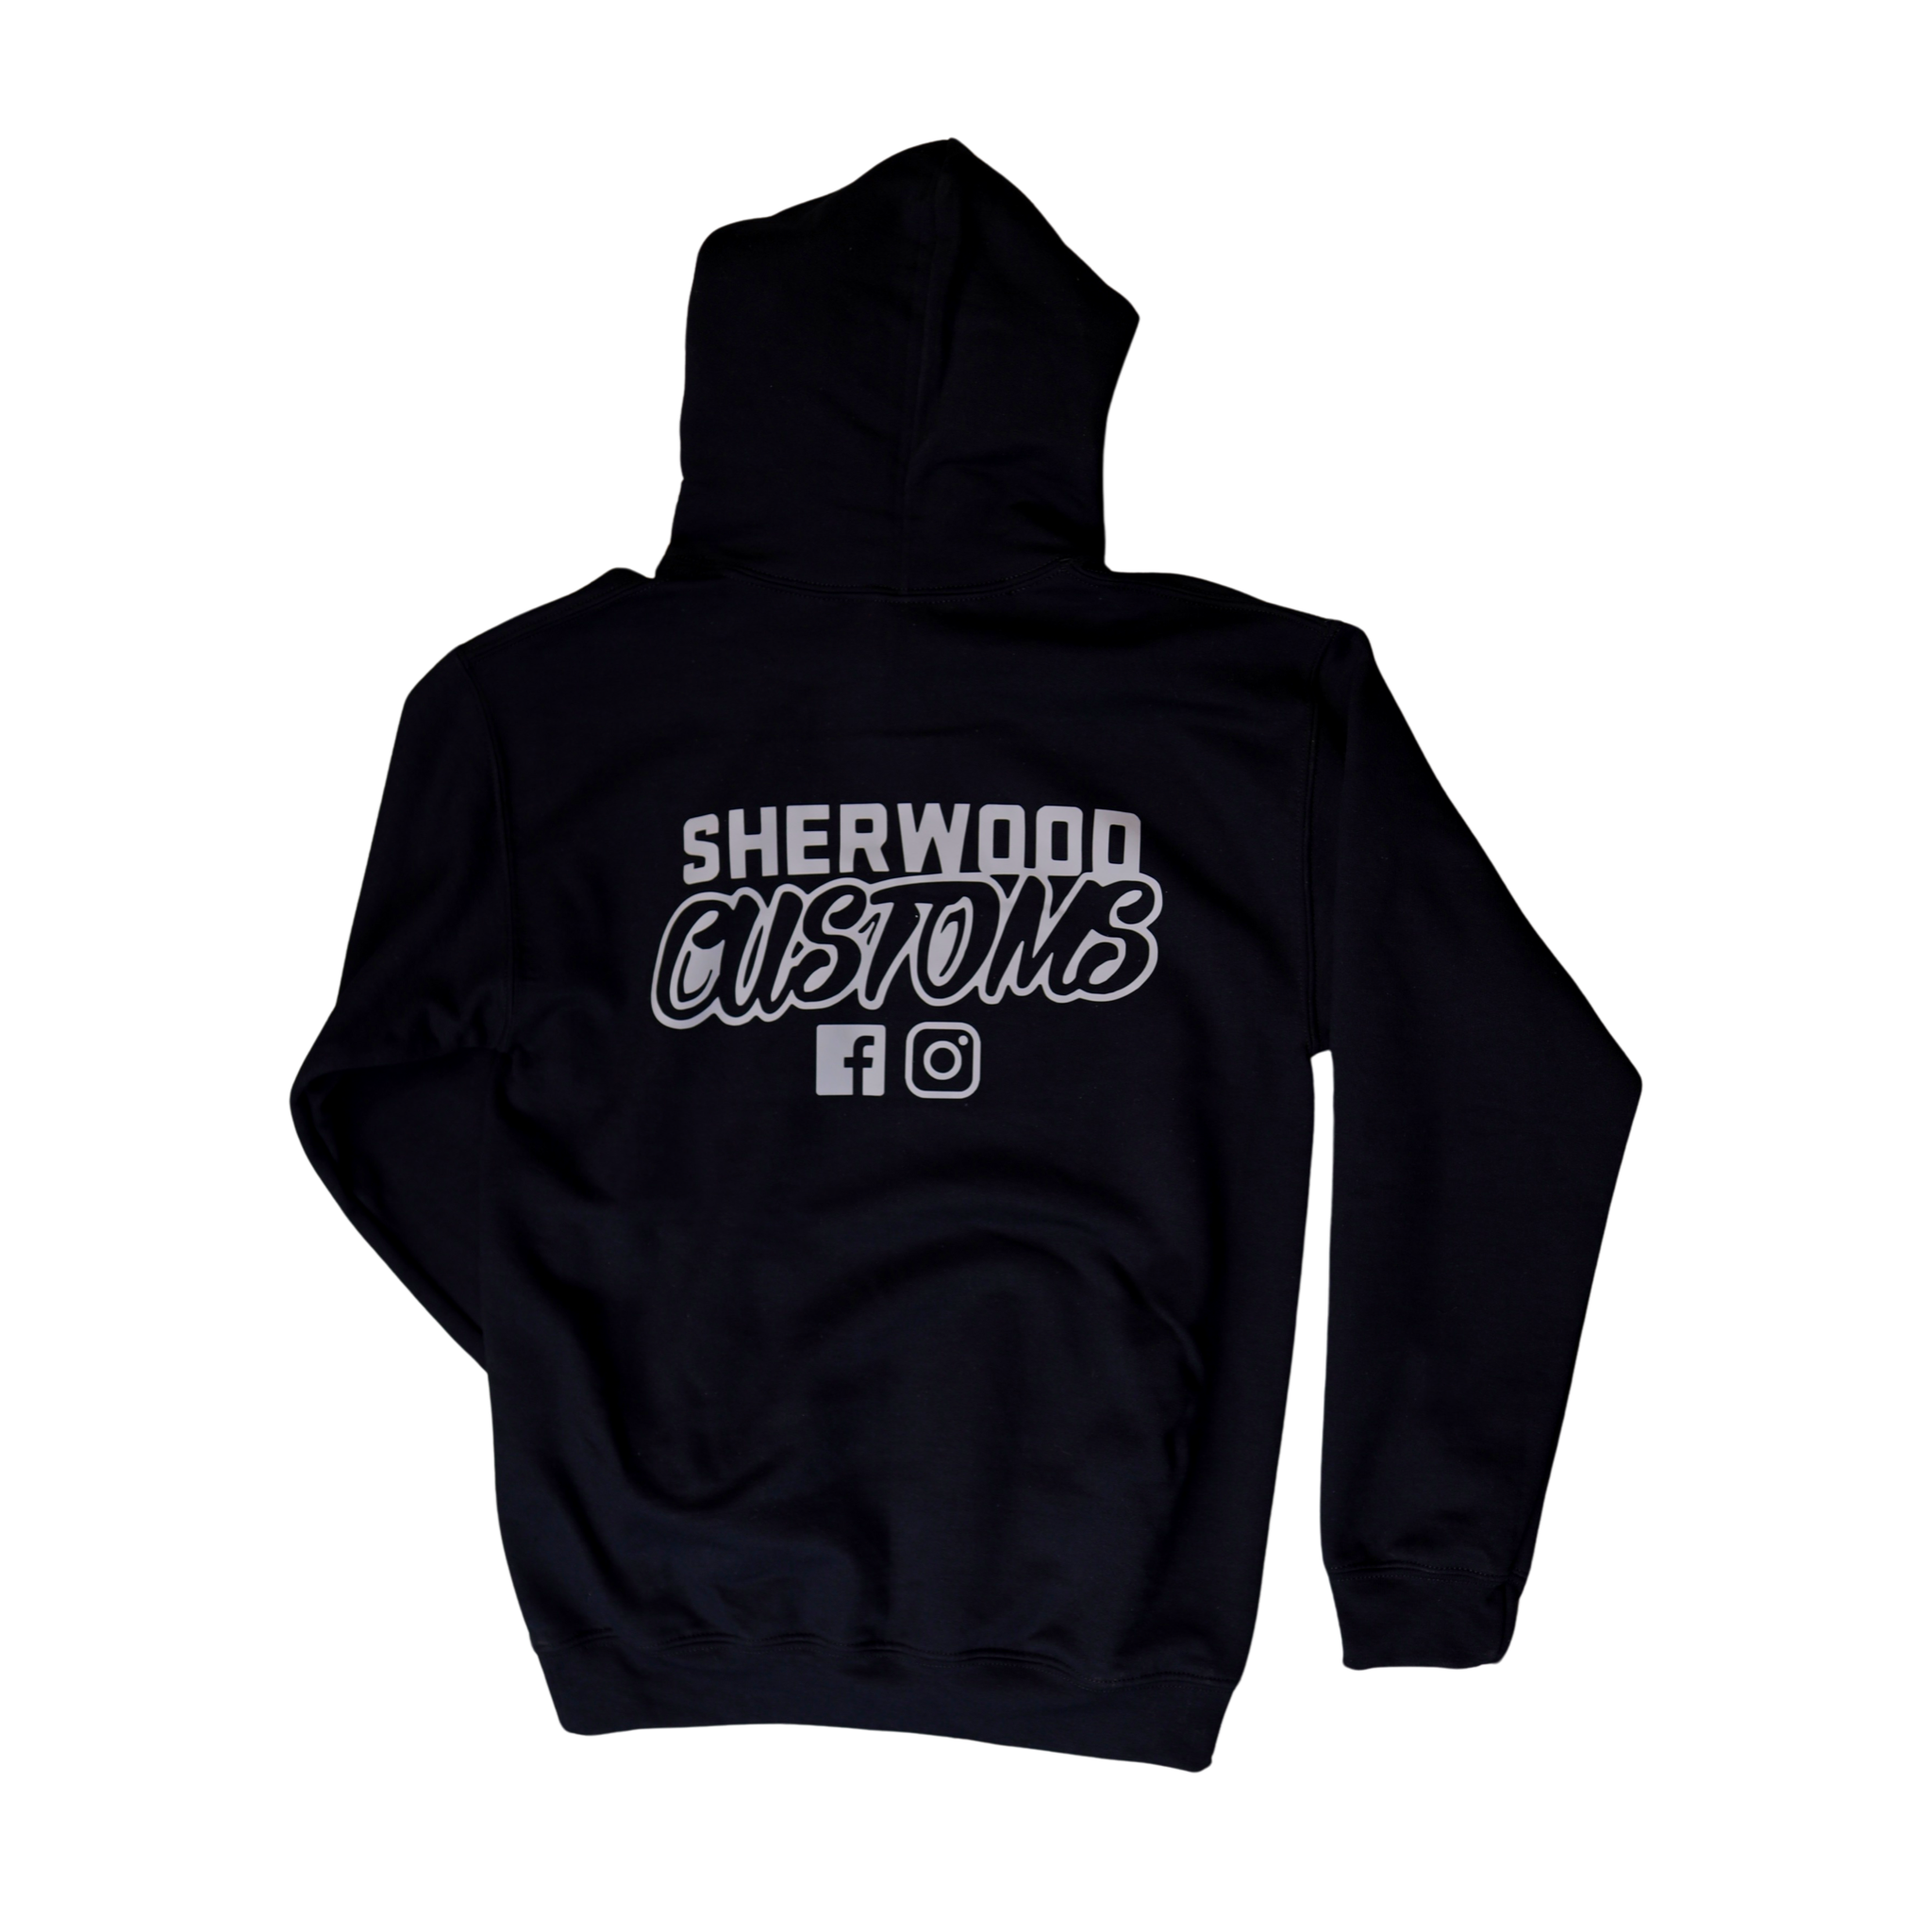 Sherwood Customs Black with Grey Logo Zip Hoodie